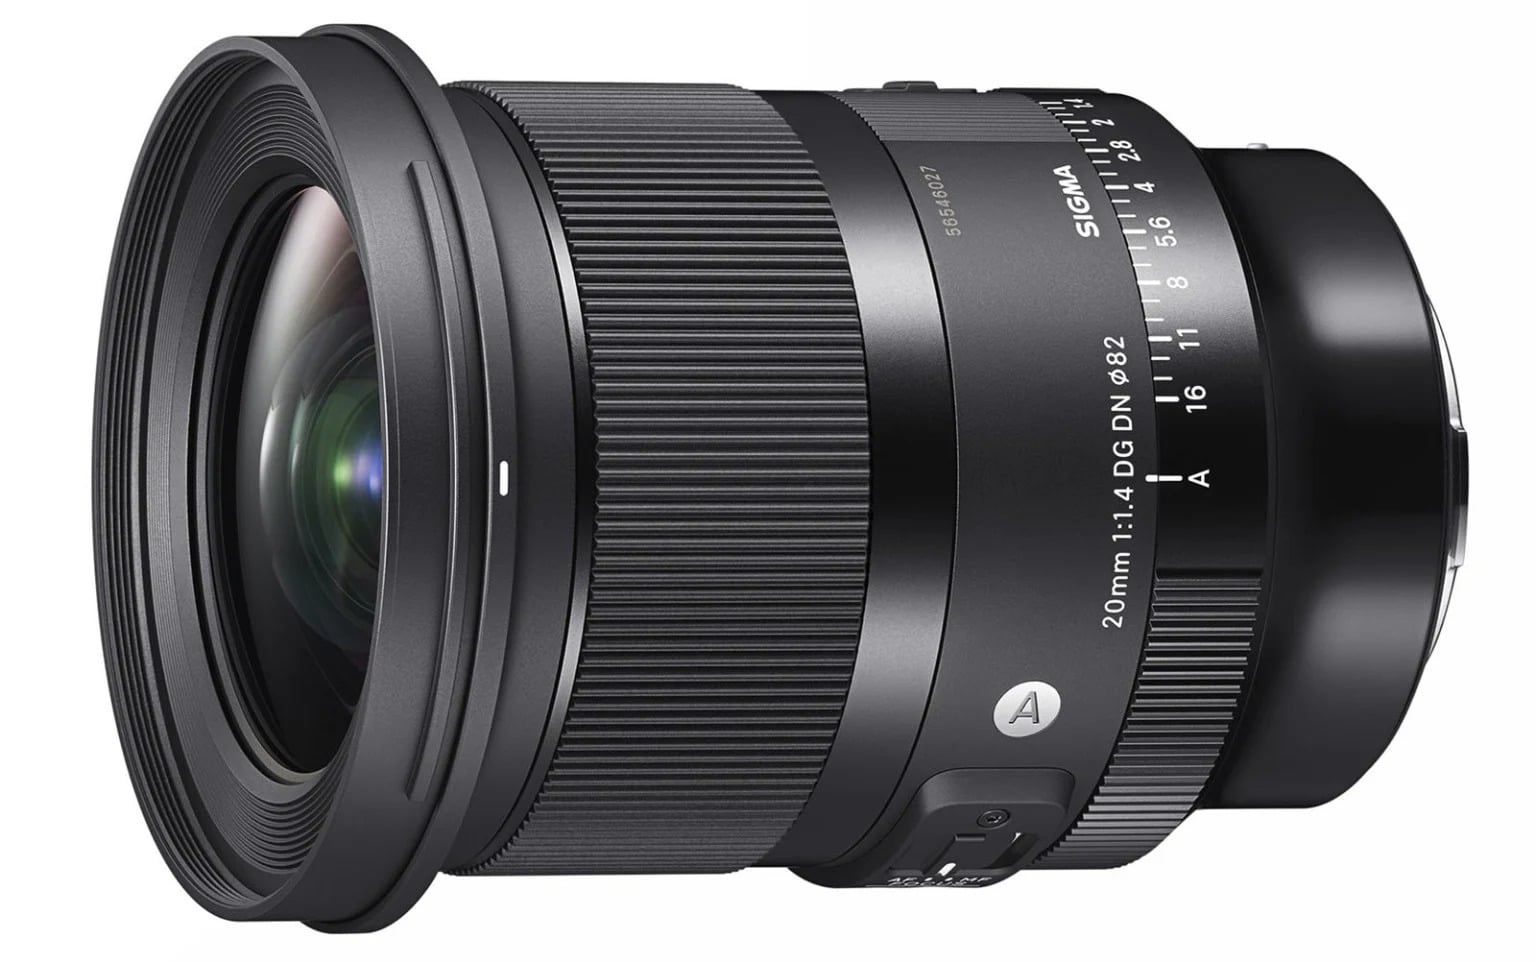 Sigma ra mắt bộ đôi ống kính góc rộng 20mm F1.4 và 24mm F1.4 cho Sony E, Leica L